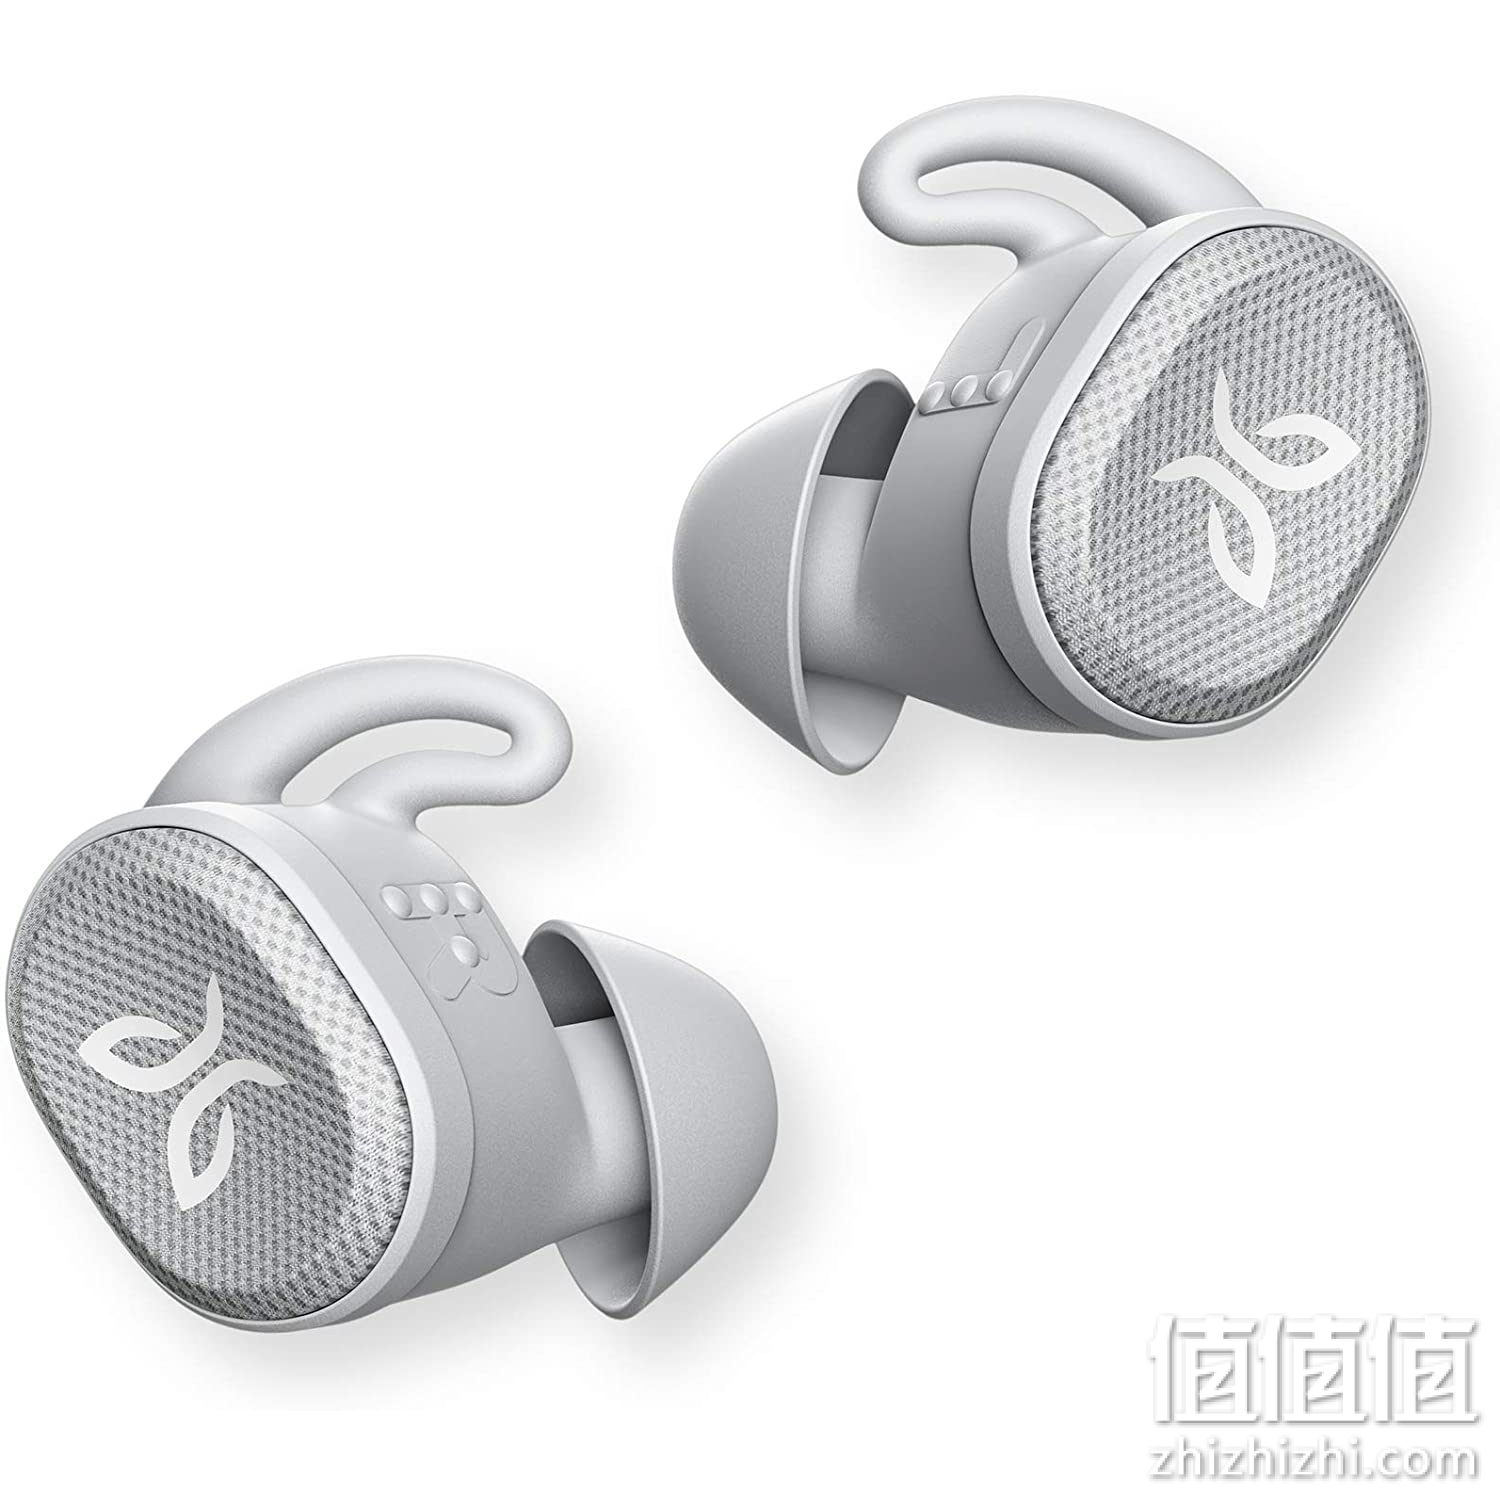 Jaybird Vista 2 真无线运动蓝牙耳机带充电盒 - ANC 运动贴合,24 小时电池,防水耳塞,*级耐用性,高品质通话 - 灰色